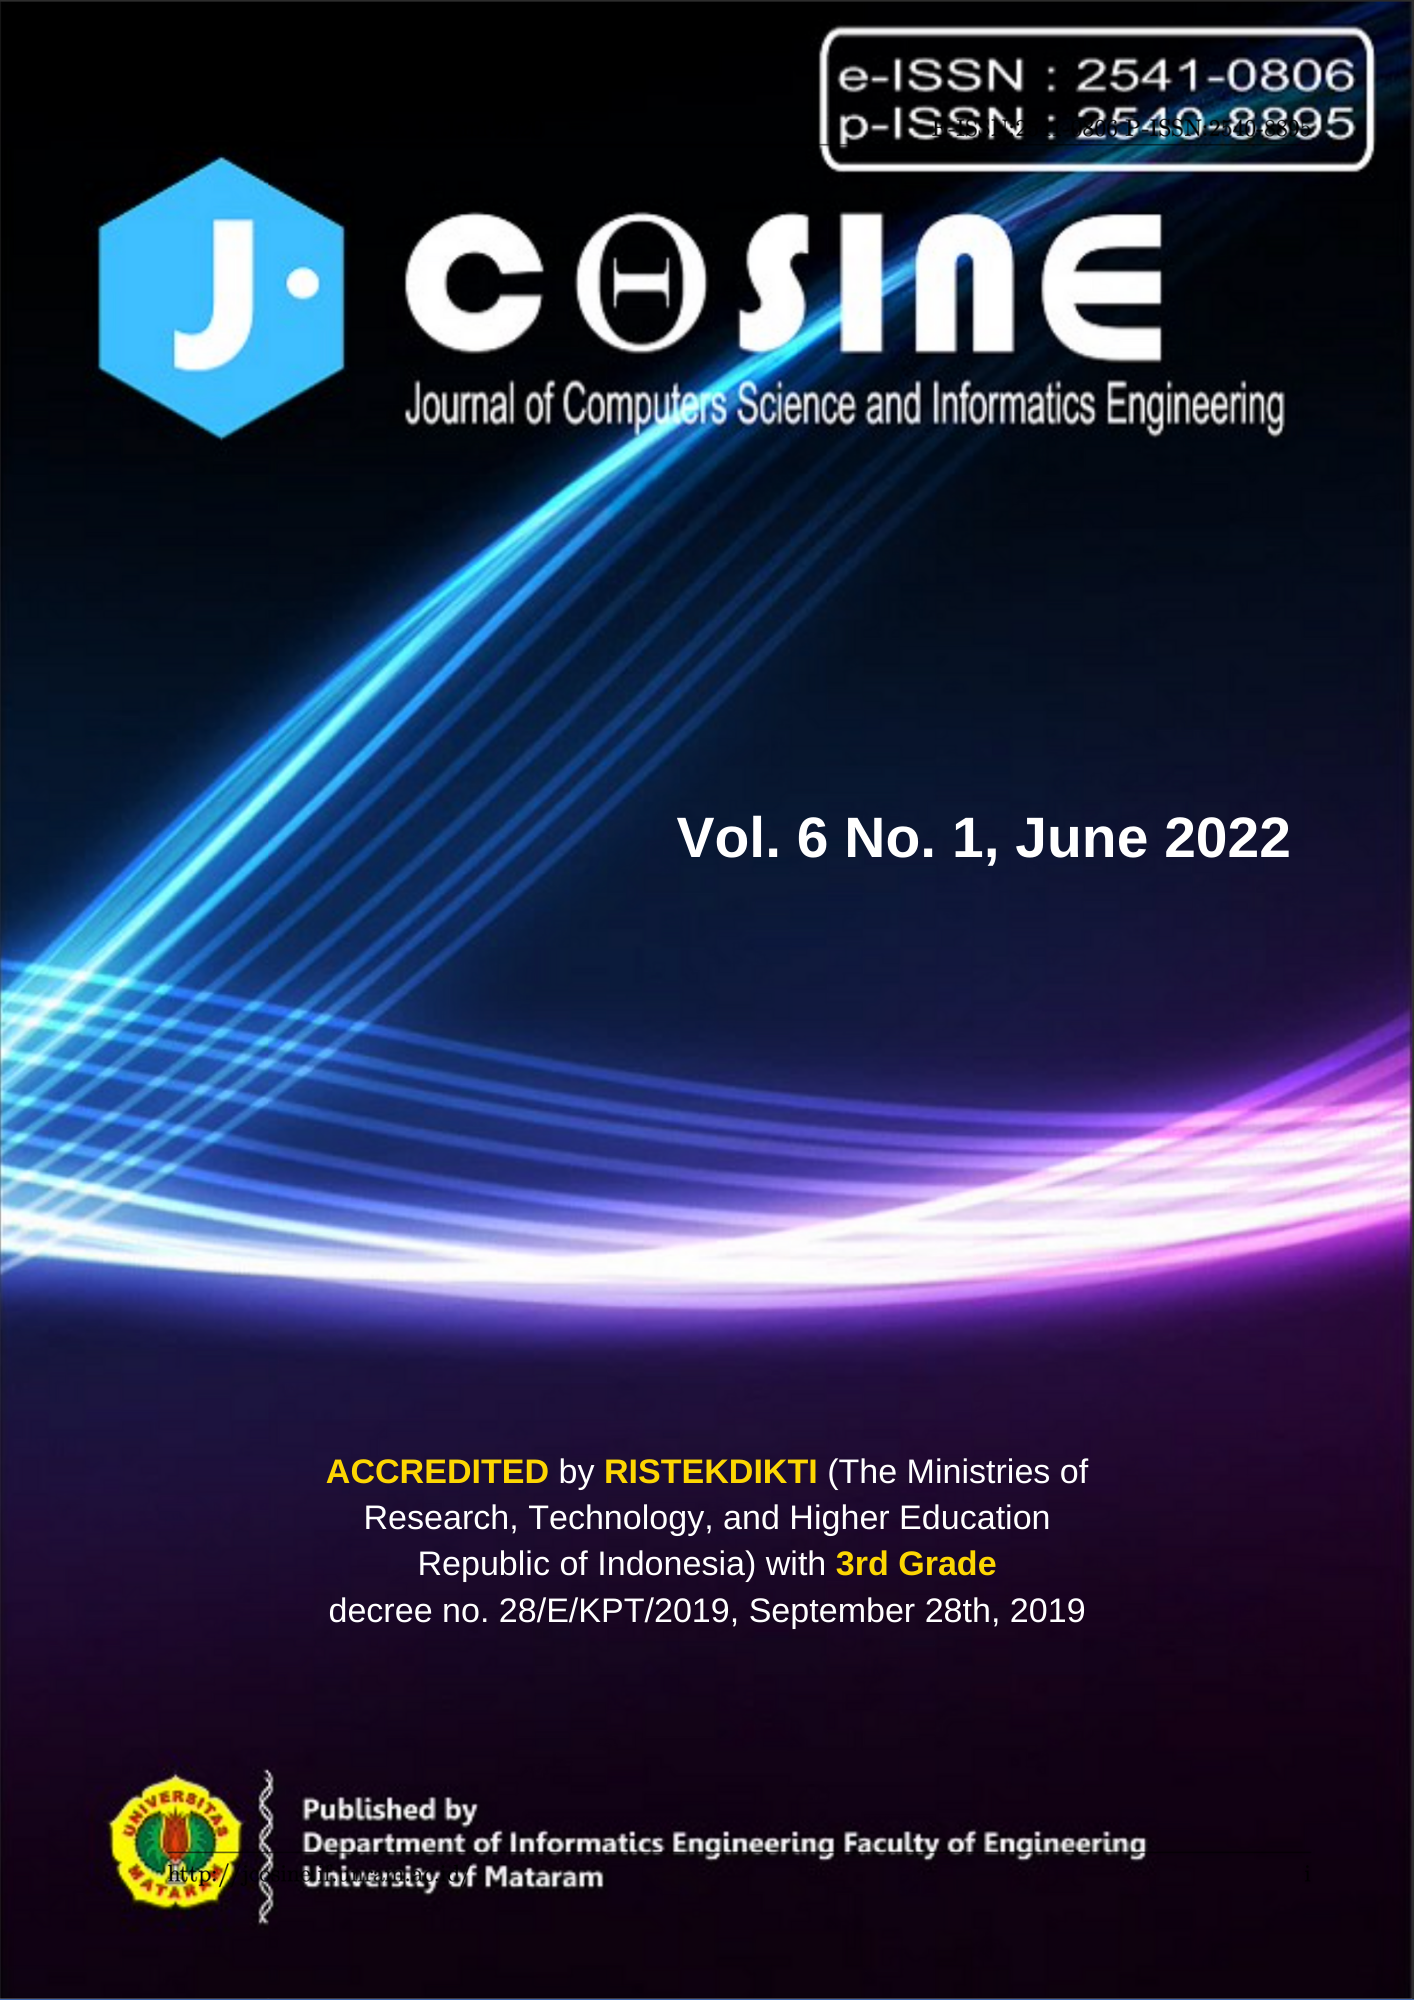 J-Cosine Cover Vol. 6 No. 1, June 2022